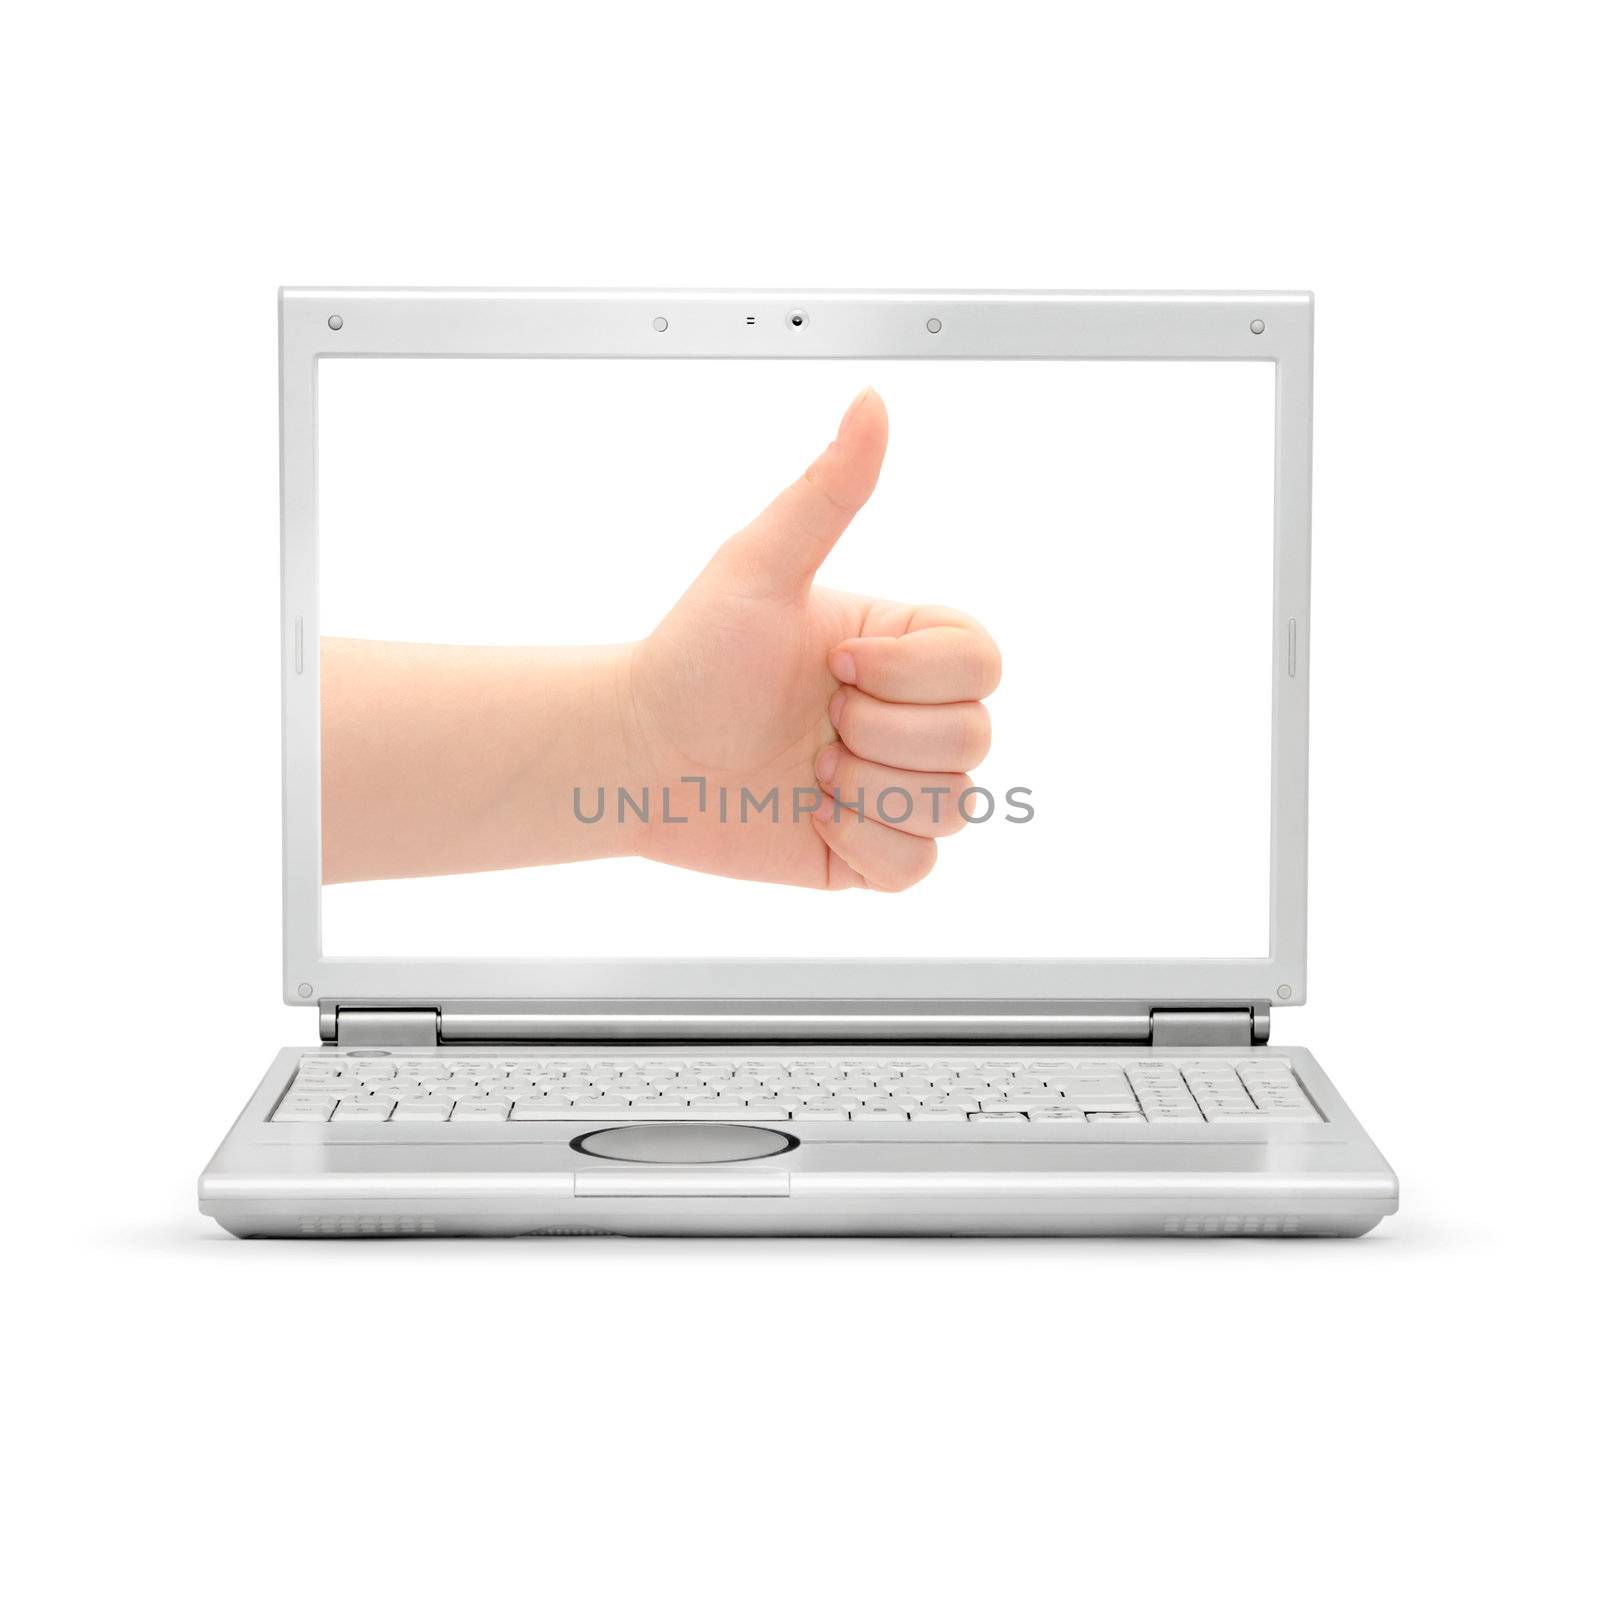 Laptop isolated on white background